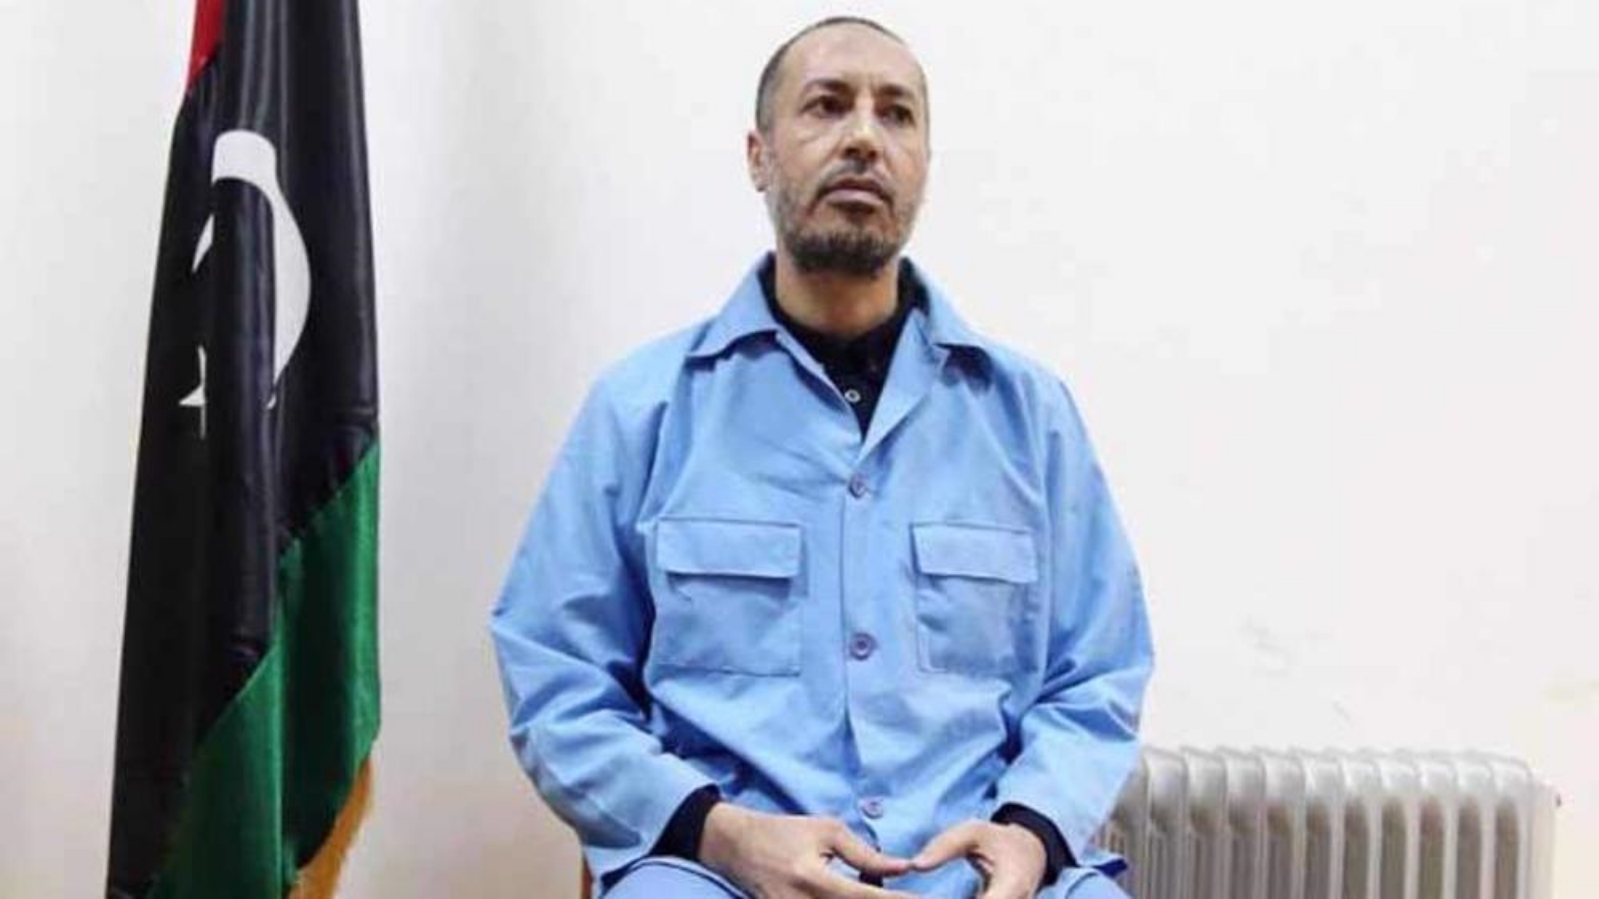 الساعدي القذافي، نجل الزعيم الليبي السابق معمر القذافي، مرتديًا ملابس السجن بانتظار المحاكمة في محكمة بالعاصمة الليبية، طرابلس. بتاريخ 13 أذار/ مارس 2016.